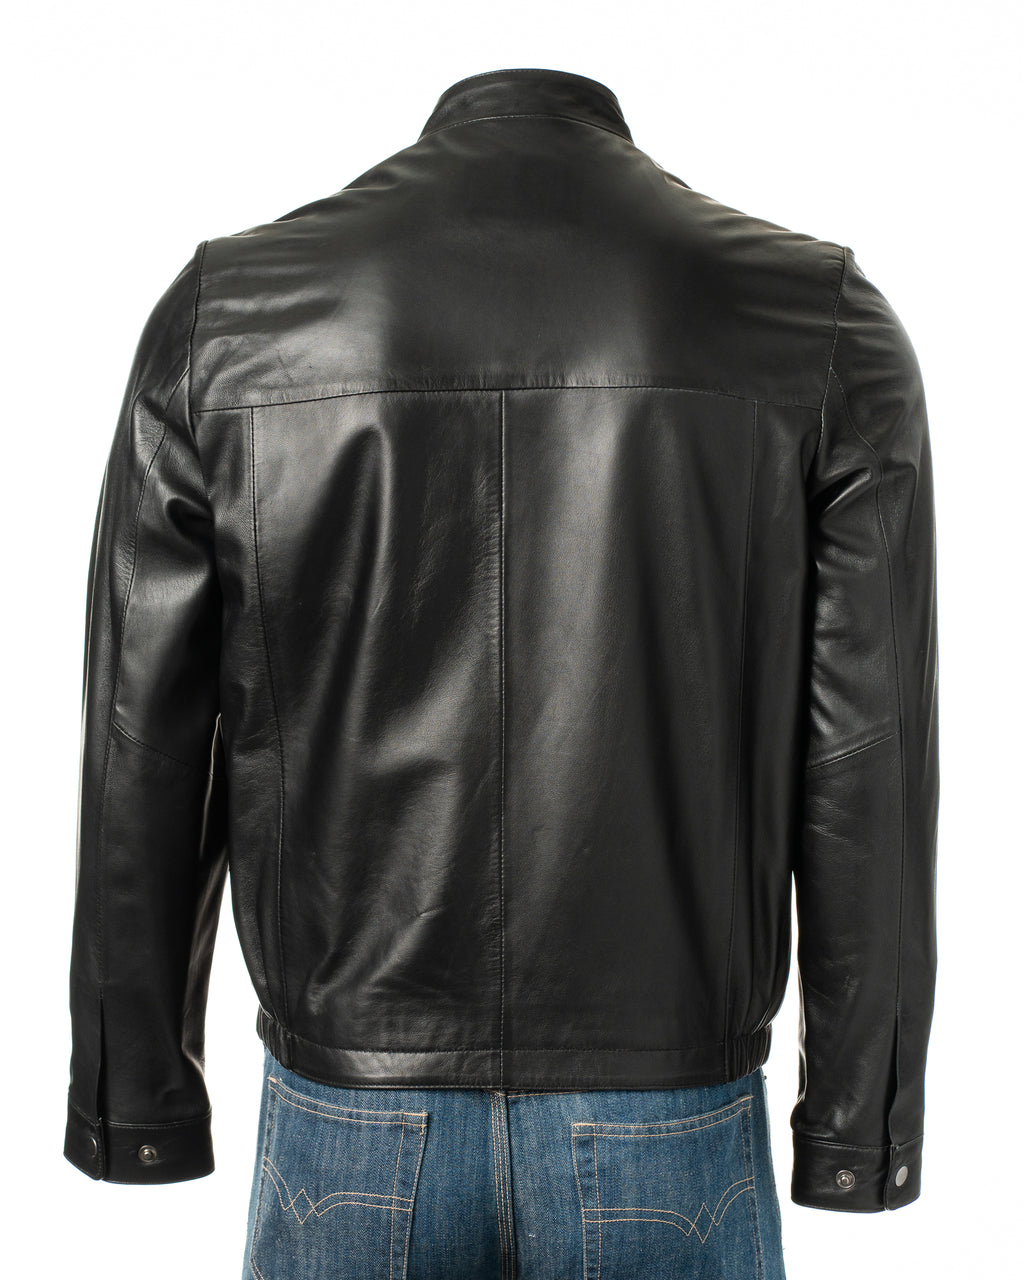 Men's Black Simple Leather Jacket: Davide